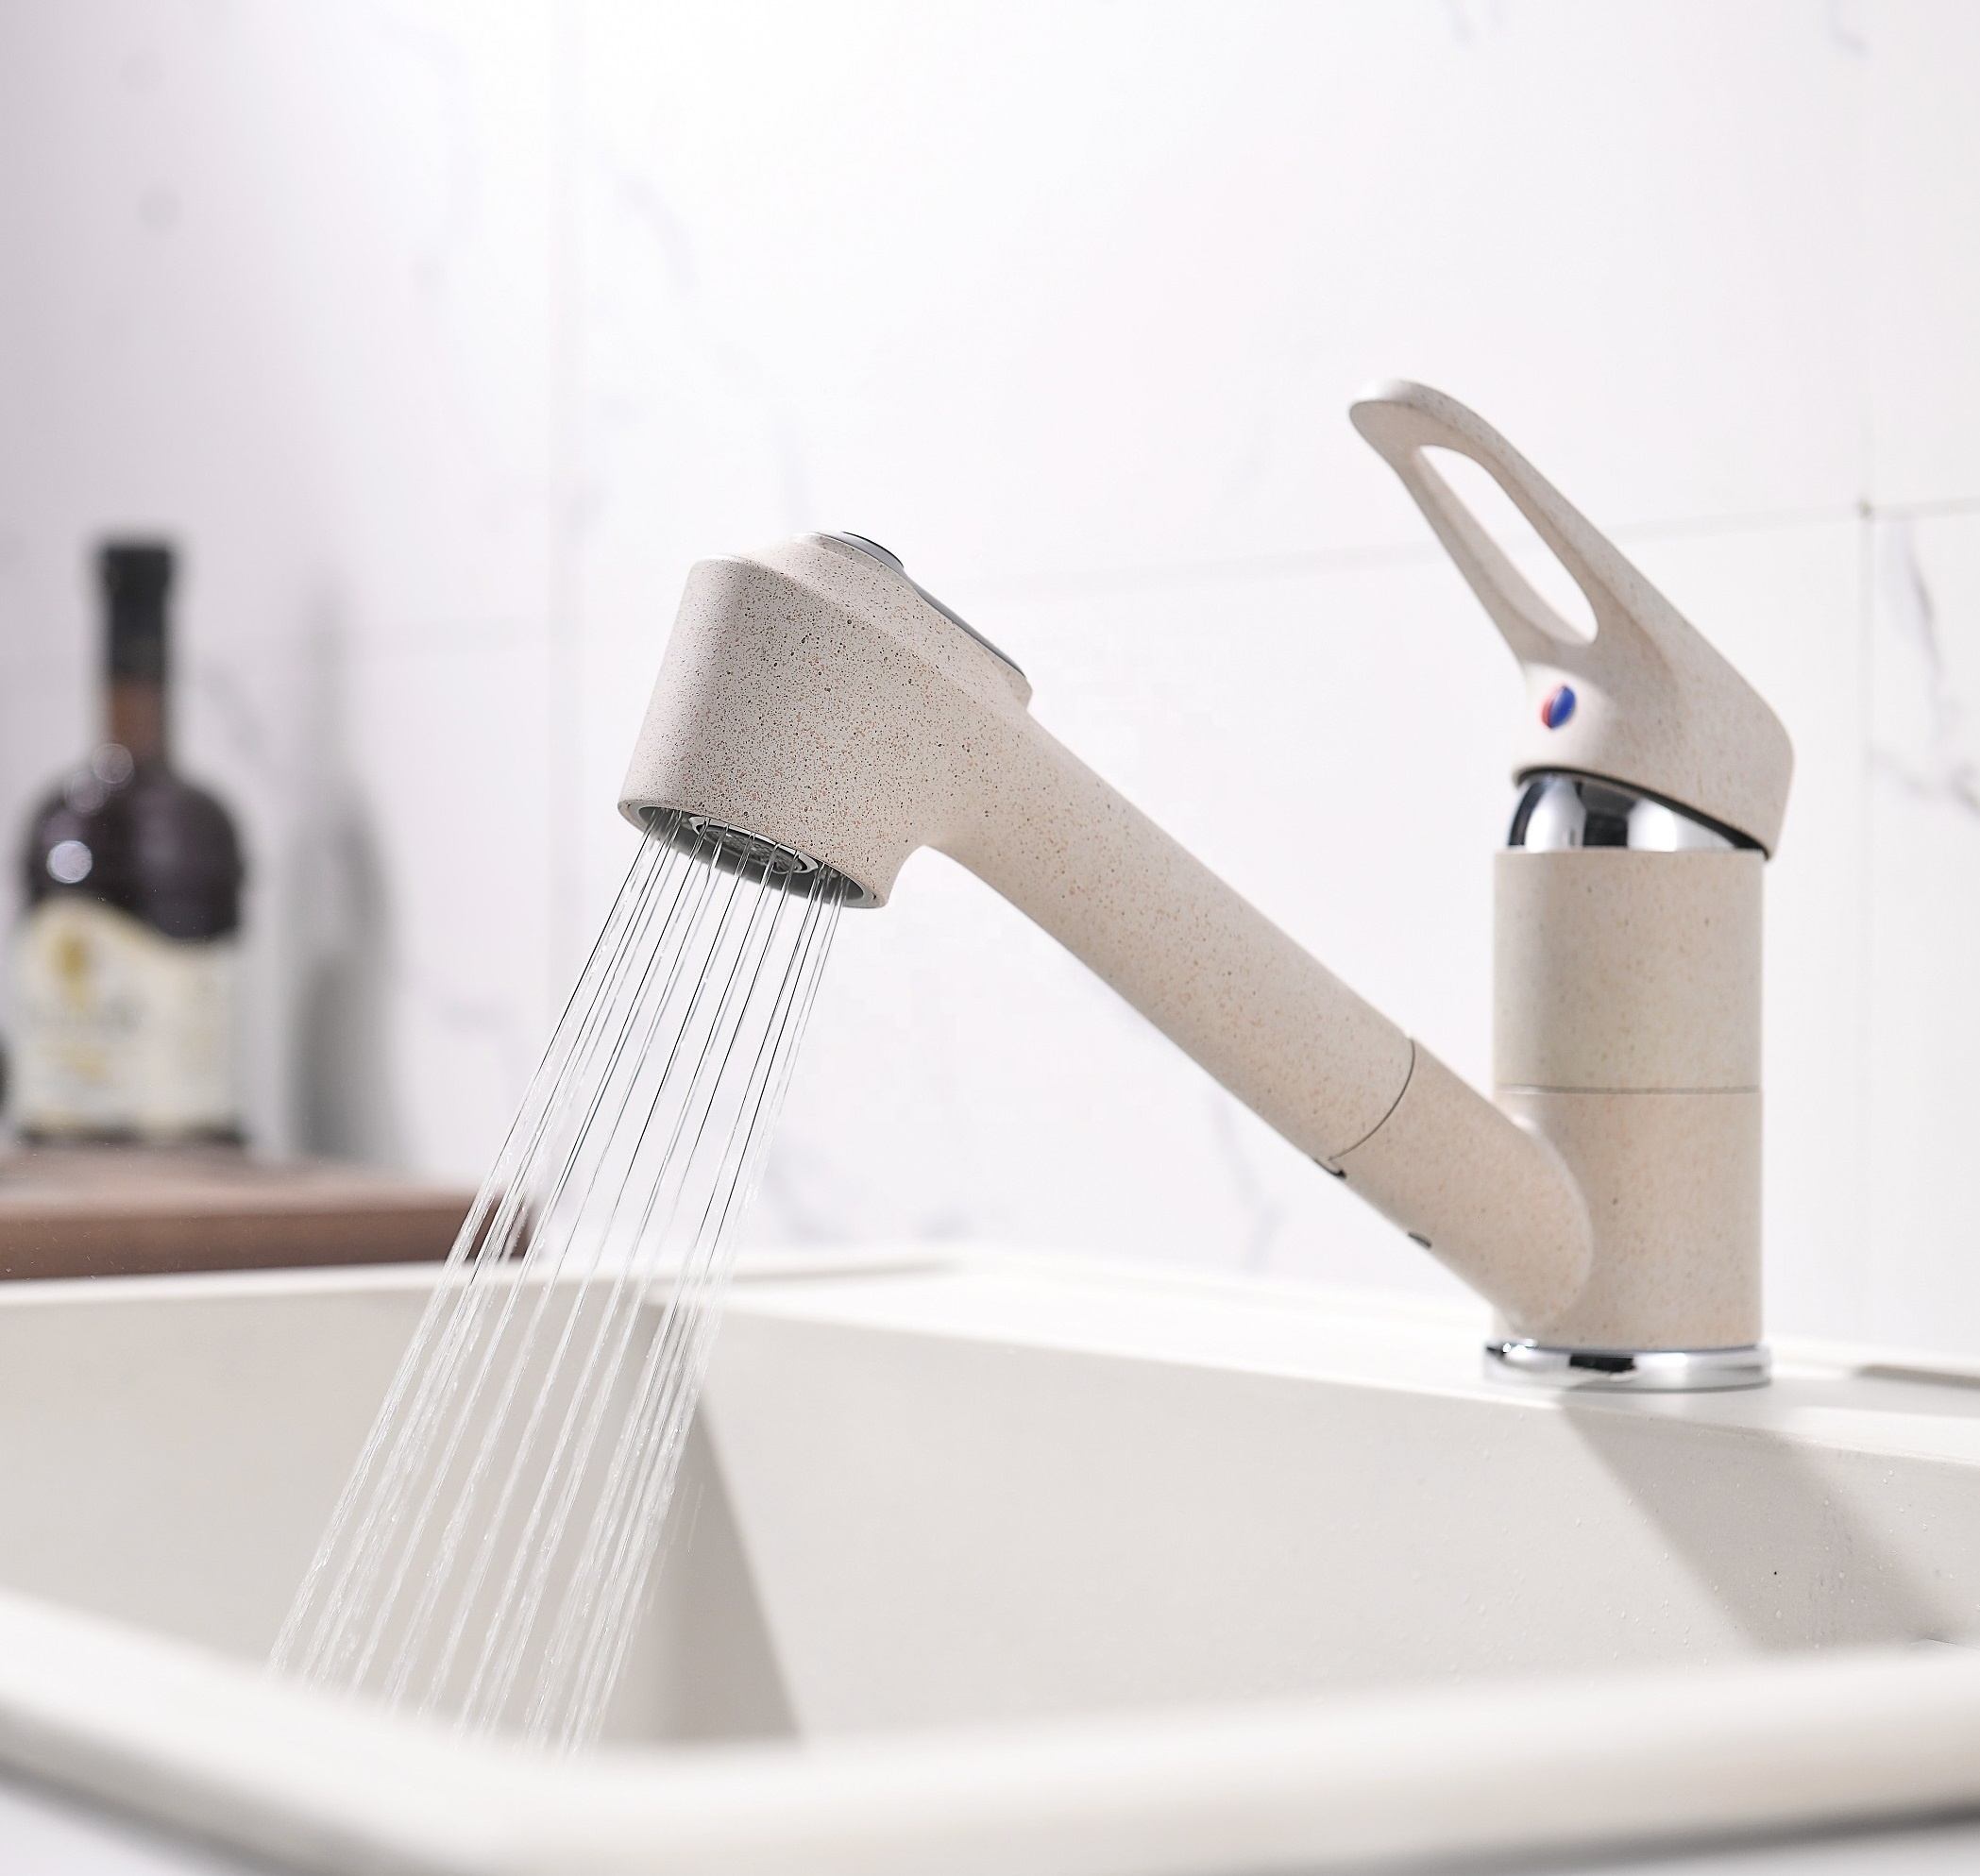 أحواض المطبخ صنابير الأدوات الصحية صنبور المطبخ المصنعين الحنفيات تسحب صنبور المطبخ